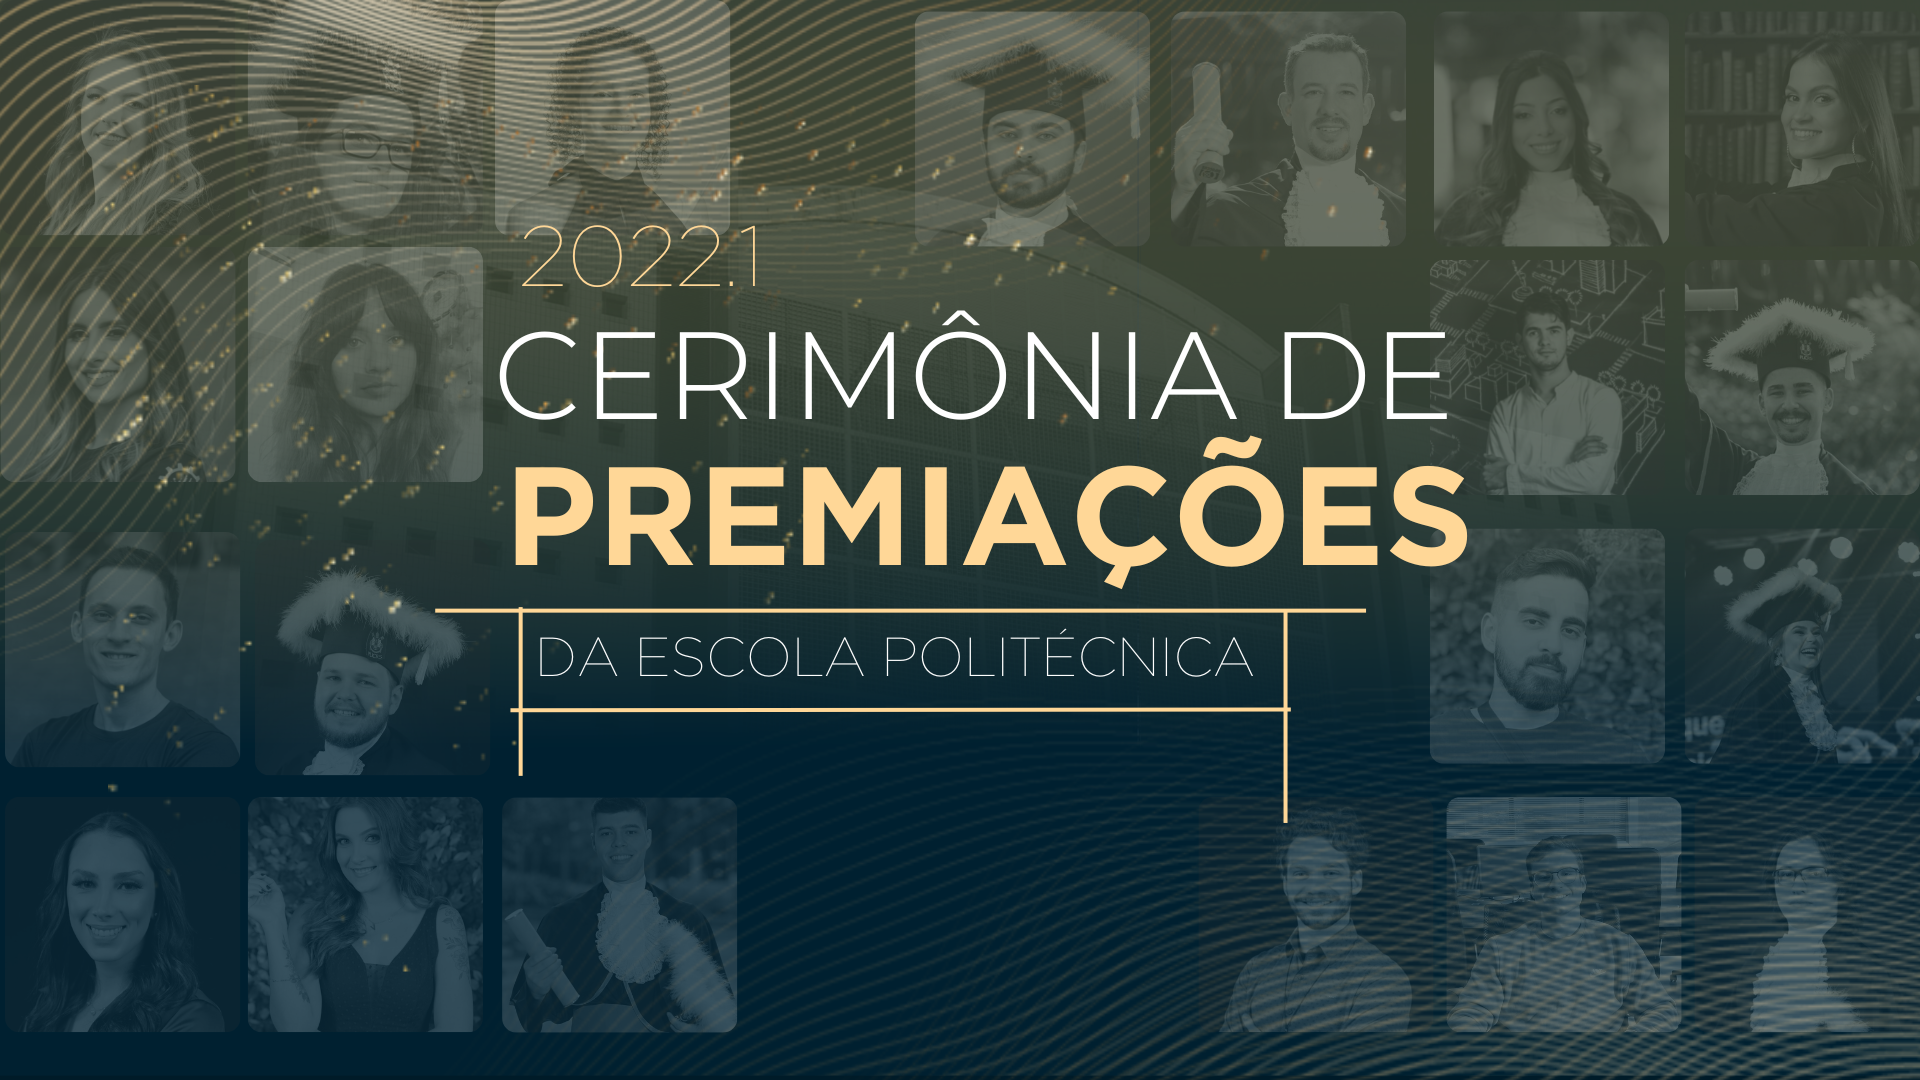 Cerimônia de Premiações da Escola Politécnica 2022.1